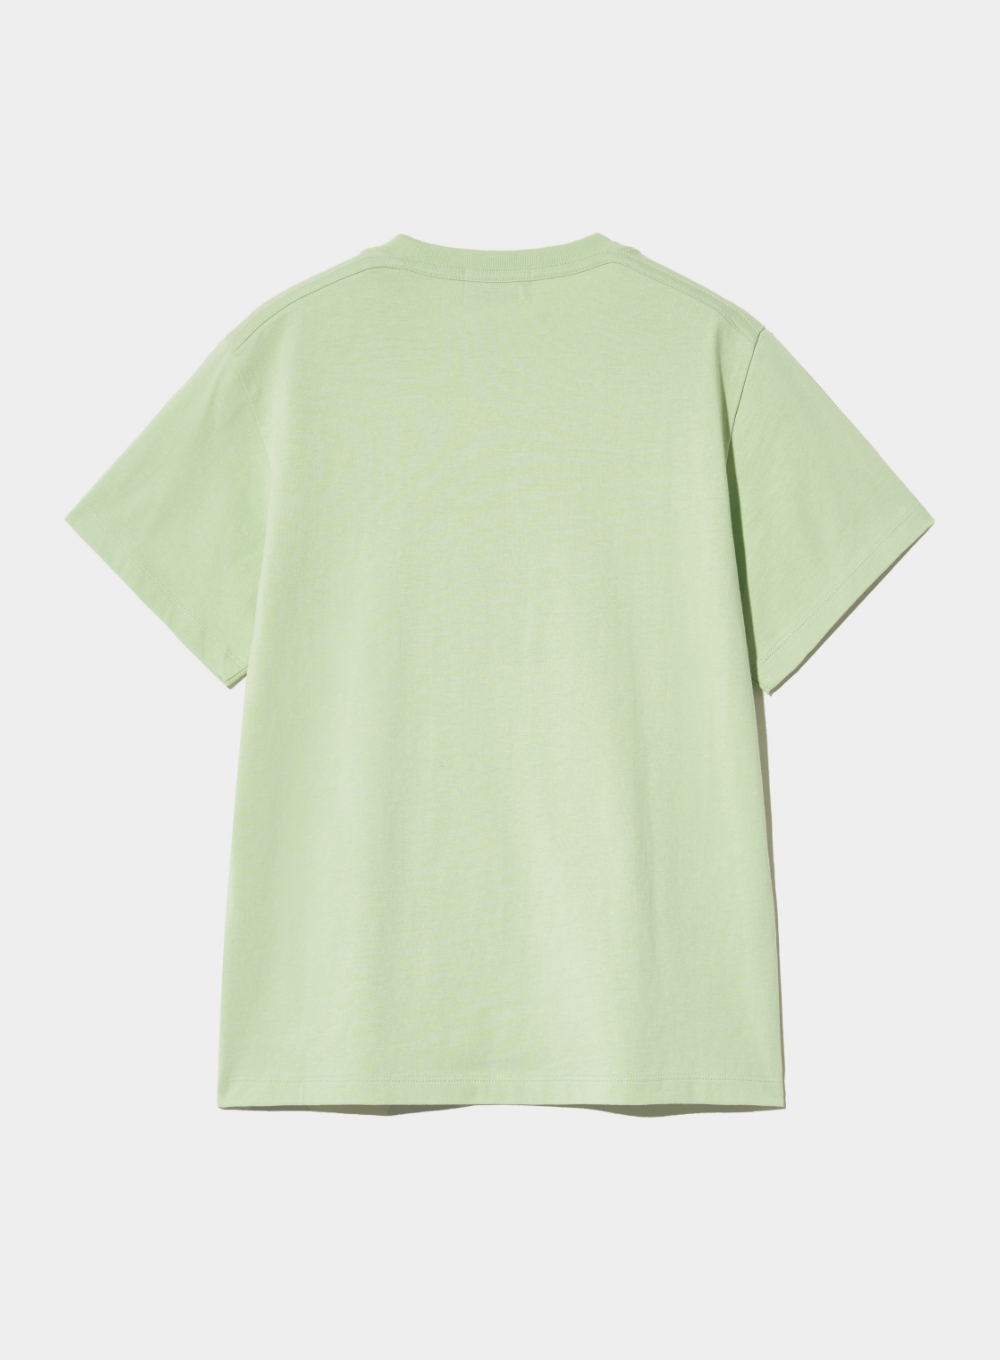 [5월 7일 예약배송] (W) Banana Tree Graphic T-Shirt - Celadon Mint